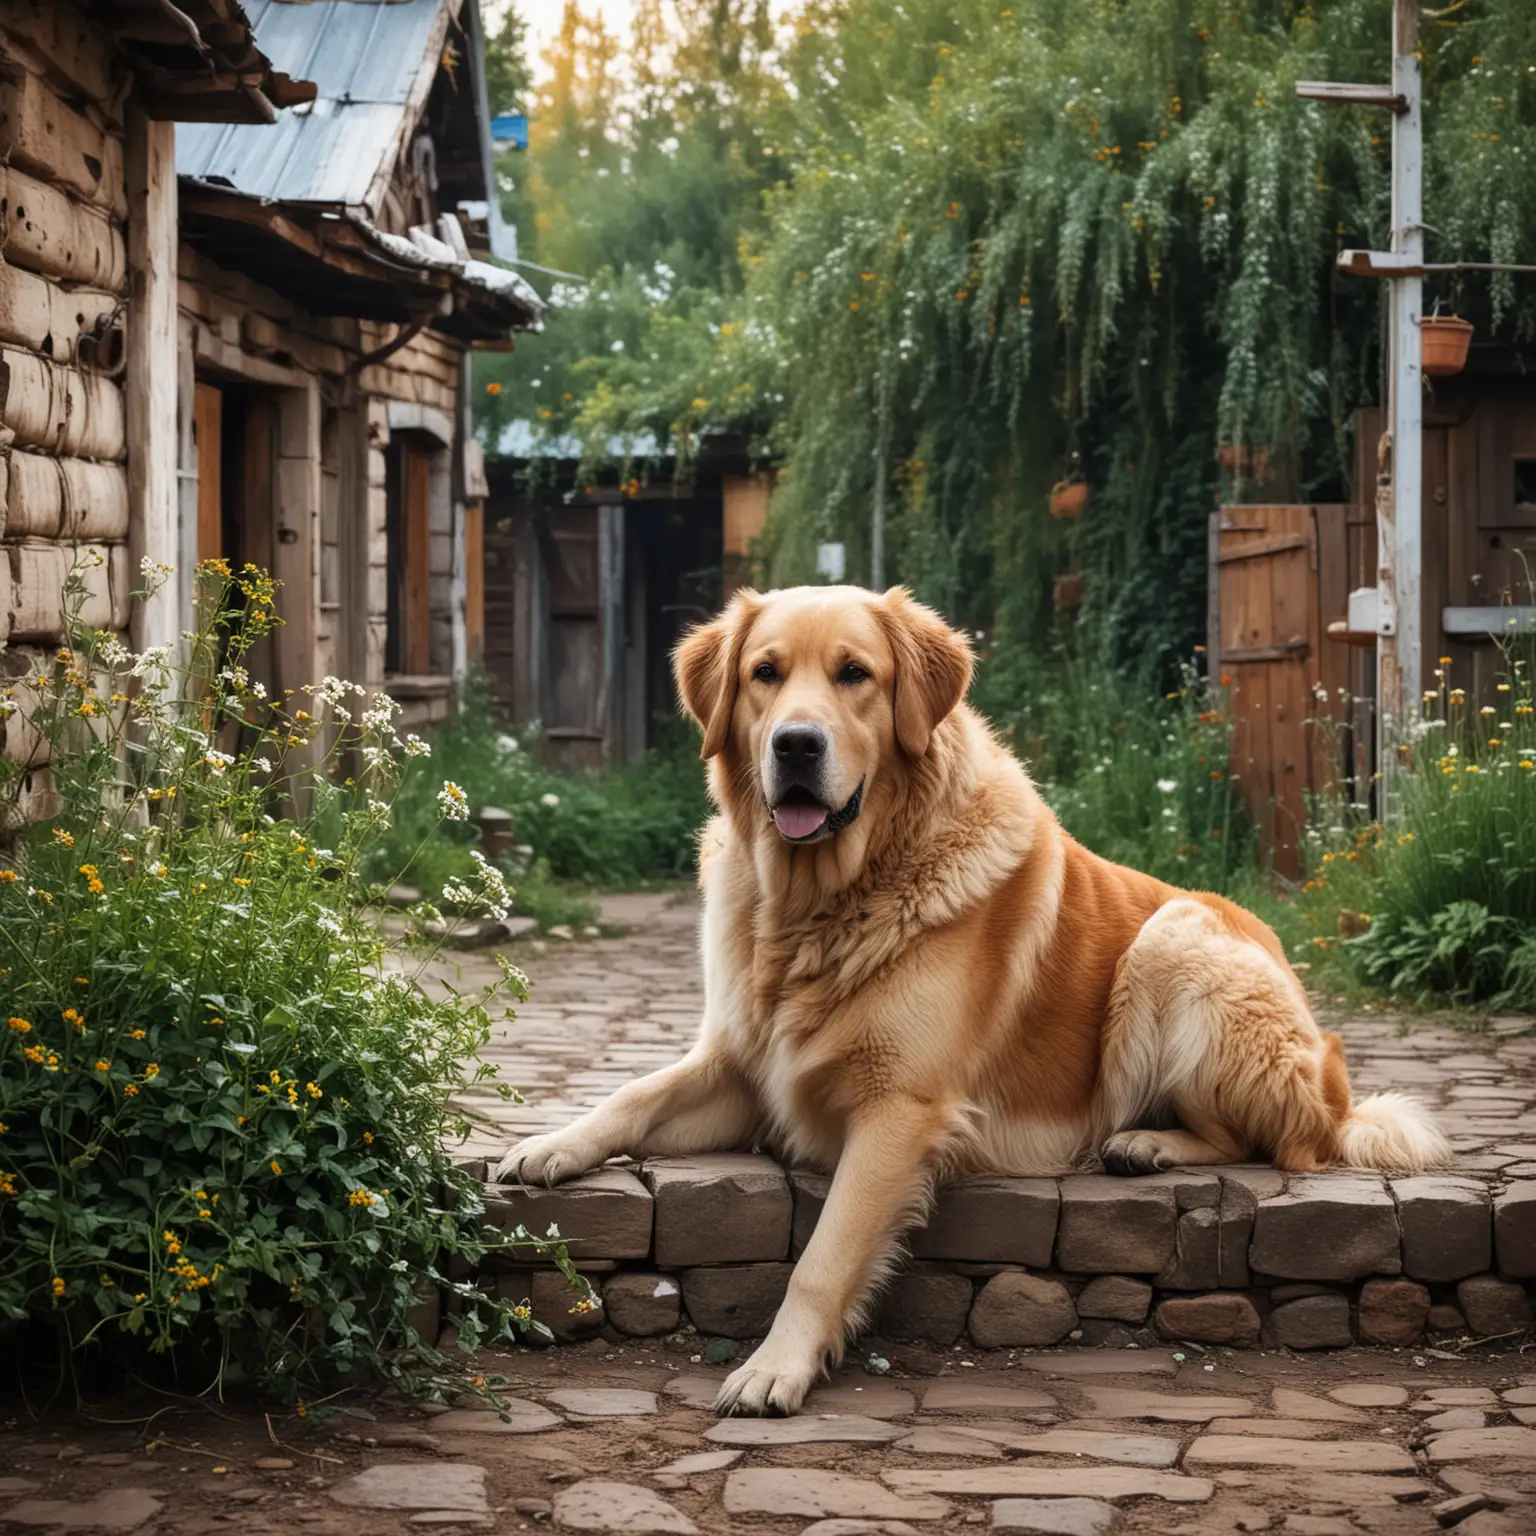 крупная собака радостно ждет своего любимого хозяина во дворе в русской деревне красивая природа
